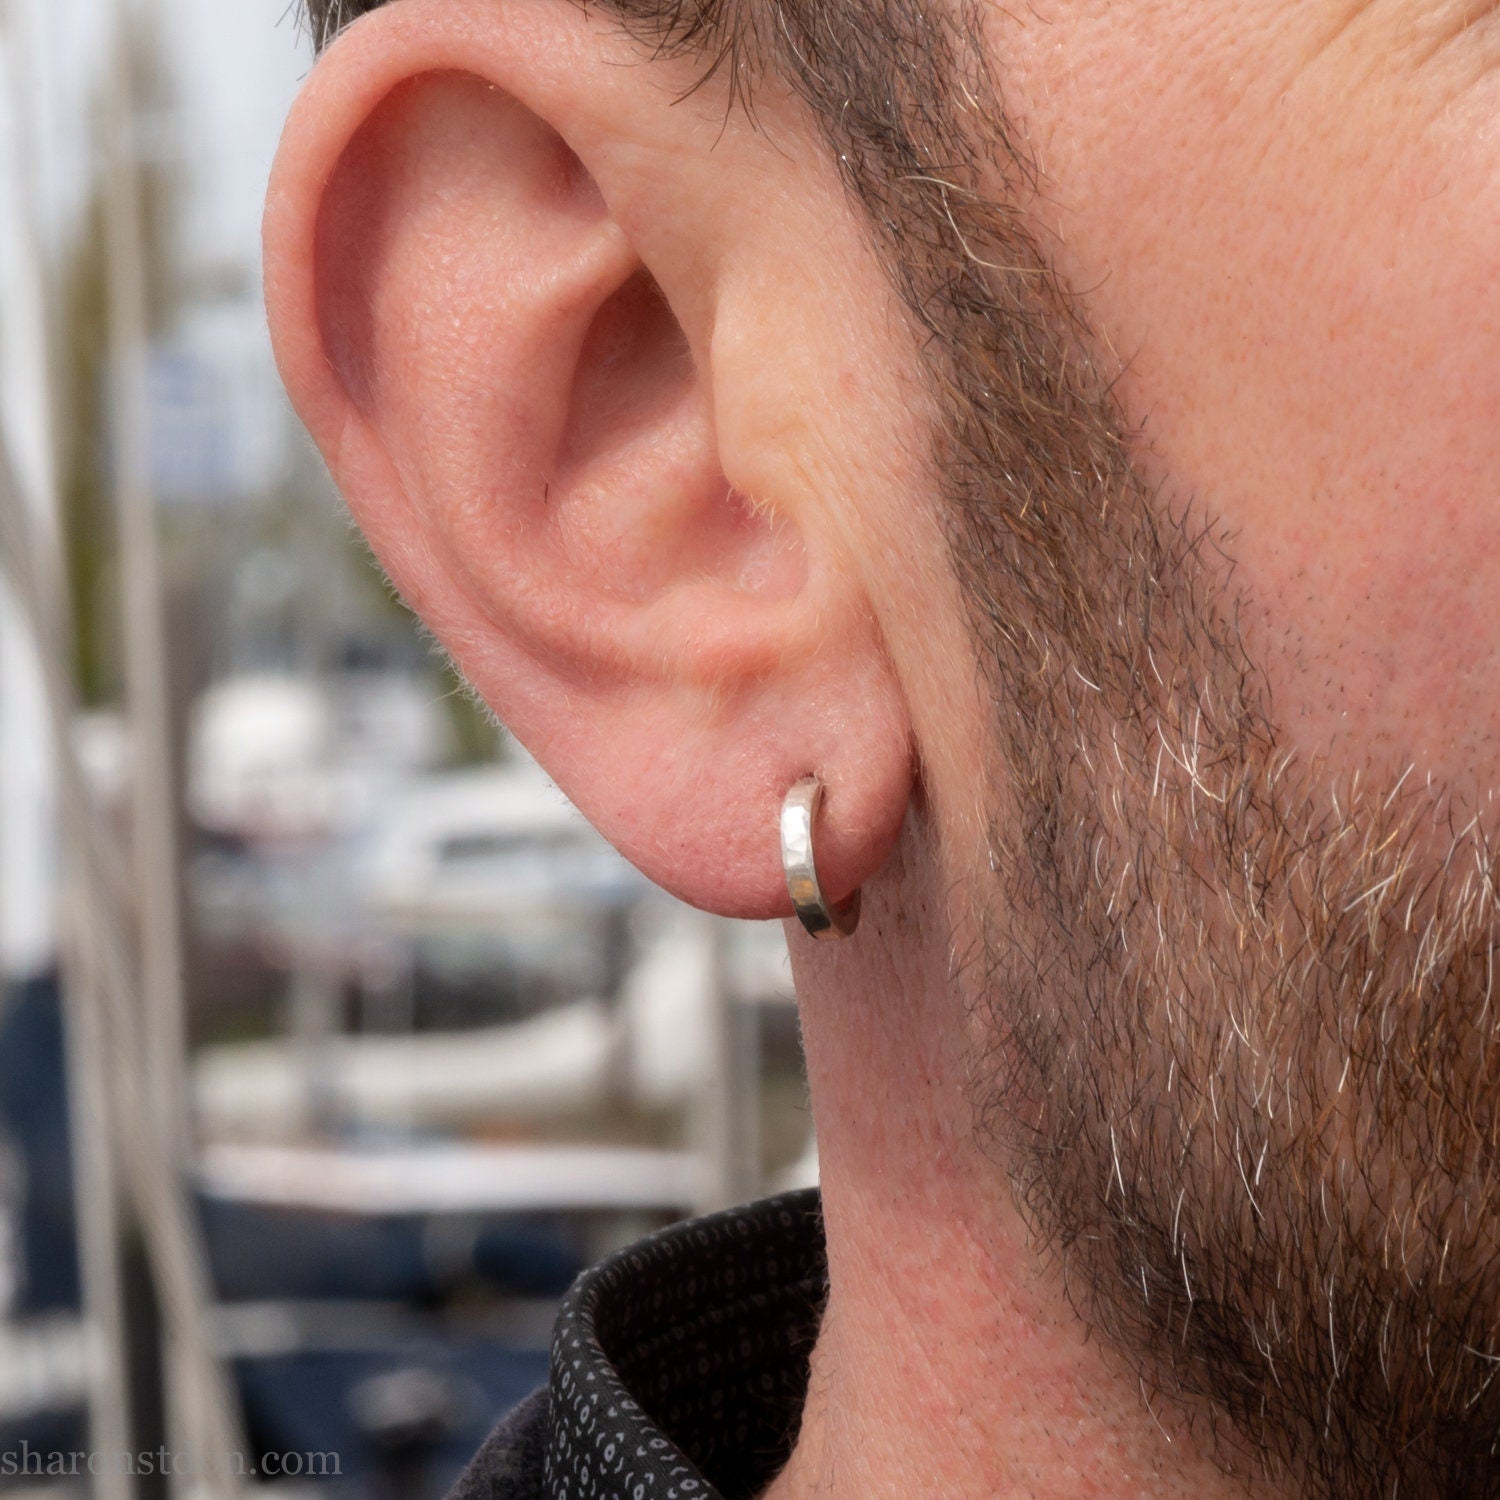 12 x 2mm small silver hoop earrings